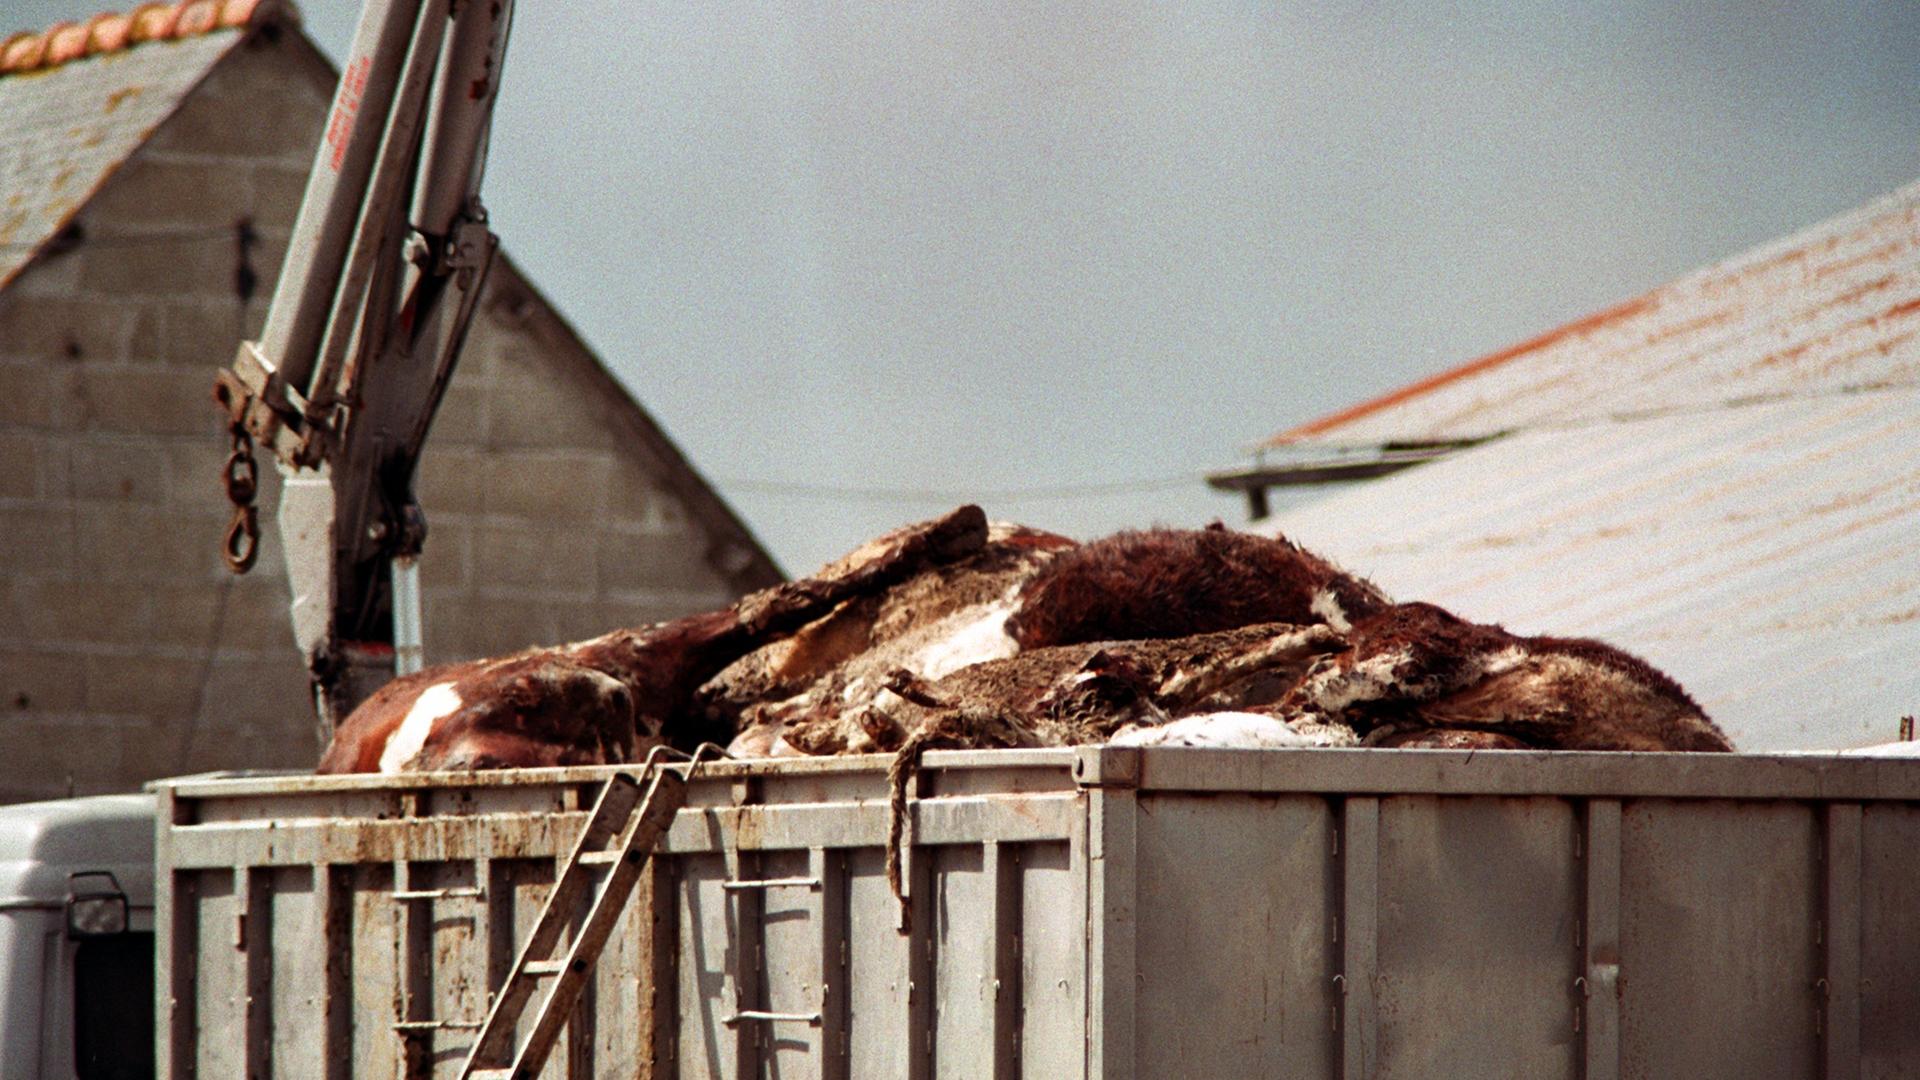 Gesunde Tiere wurden notgeschlachtet, obwohl sie gesund waren. Auch in anderen europäischen Ländern fanden Notschlachtungen statt, wie die von 151 Rindern am 25.03.1996 auf einem Bauernhof in der französischen Bretagne 